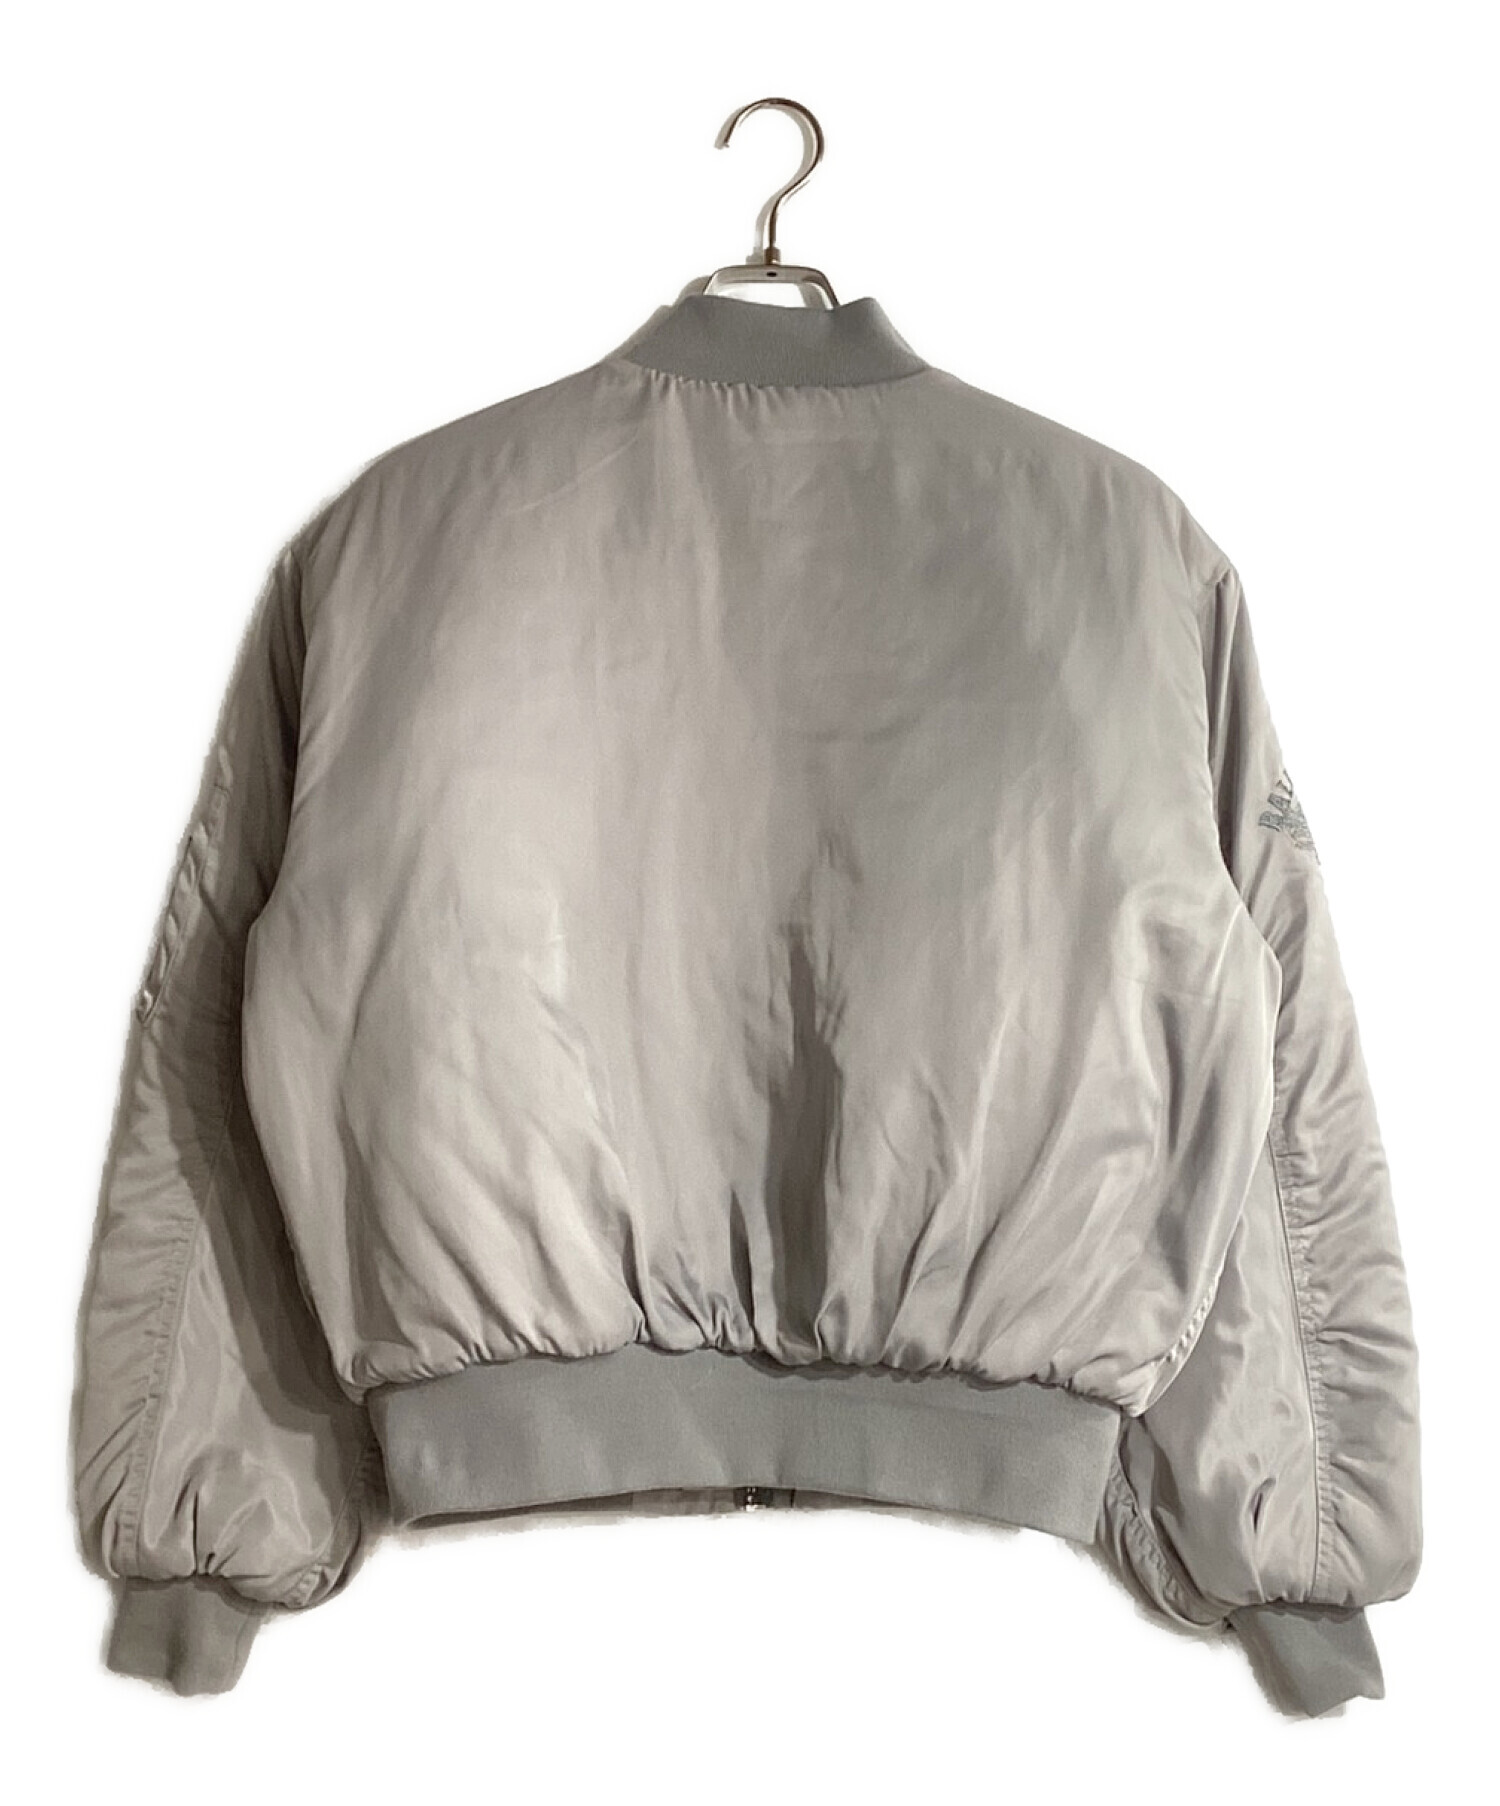 B.BALLSY (ボールジーブラザーズ) ショートレングスMA-1ジャケット グレー サイズ:L